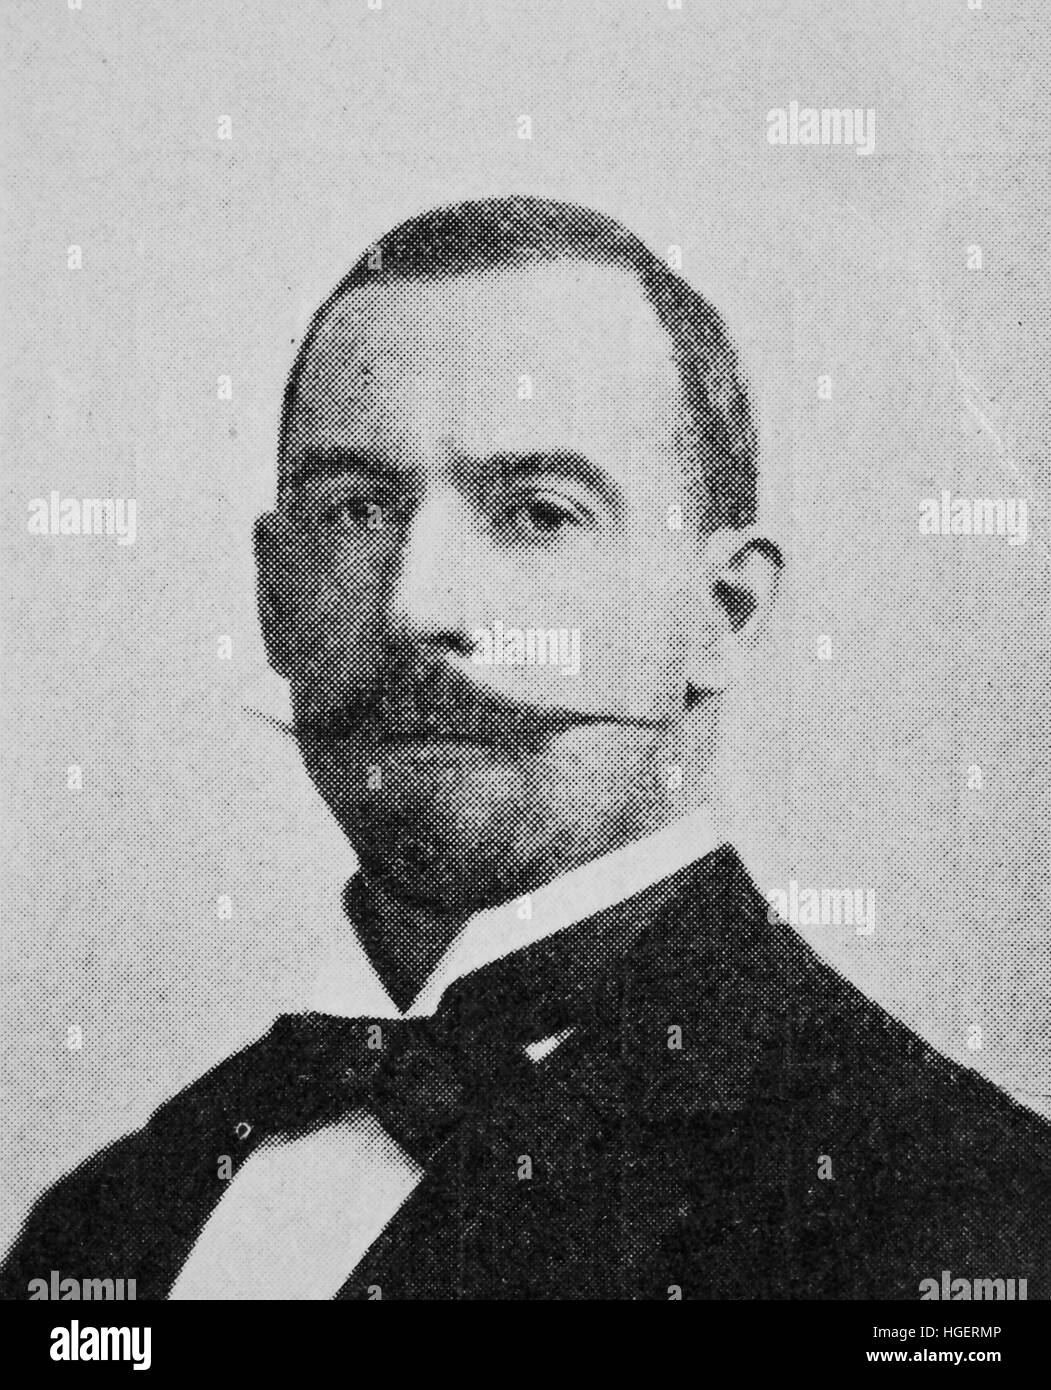 Oswald Flamm, geboren 30. Juli 1861; Verstorbenen 12. Juni 1935, war ein deutscher Schiffbau und Schiffbau-Ingenieur., Reproduktion eines Fotos aus dem Jahr 1895, digital verbessert Stockfoto